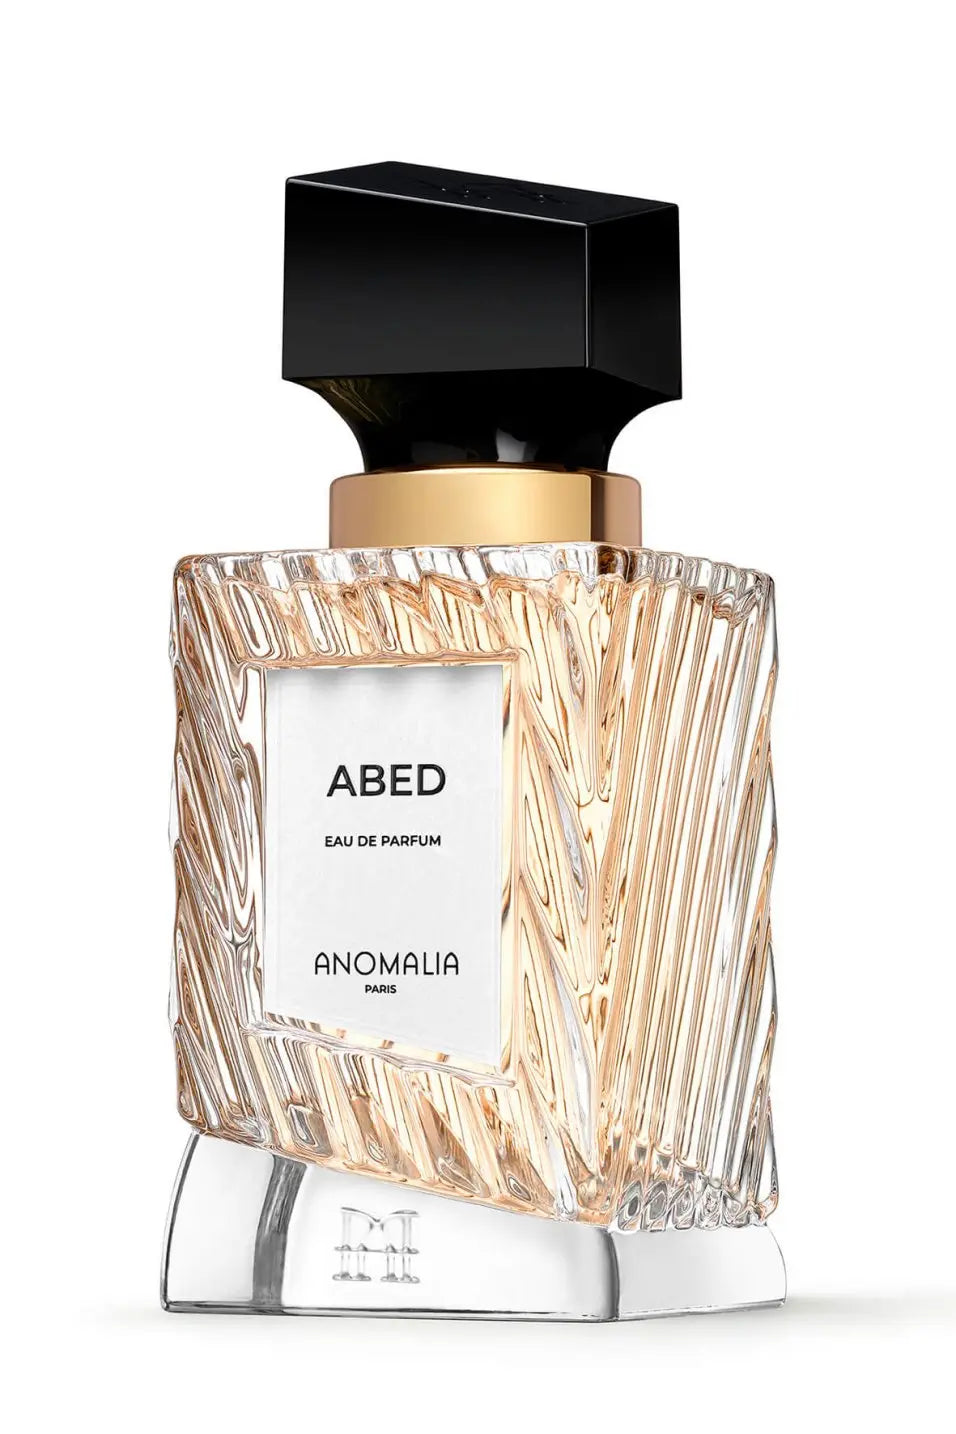 Anomalia Abed Eau de Parfum - 70 ml